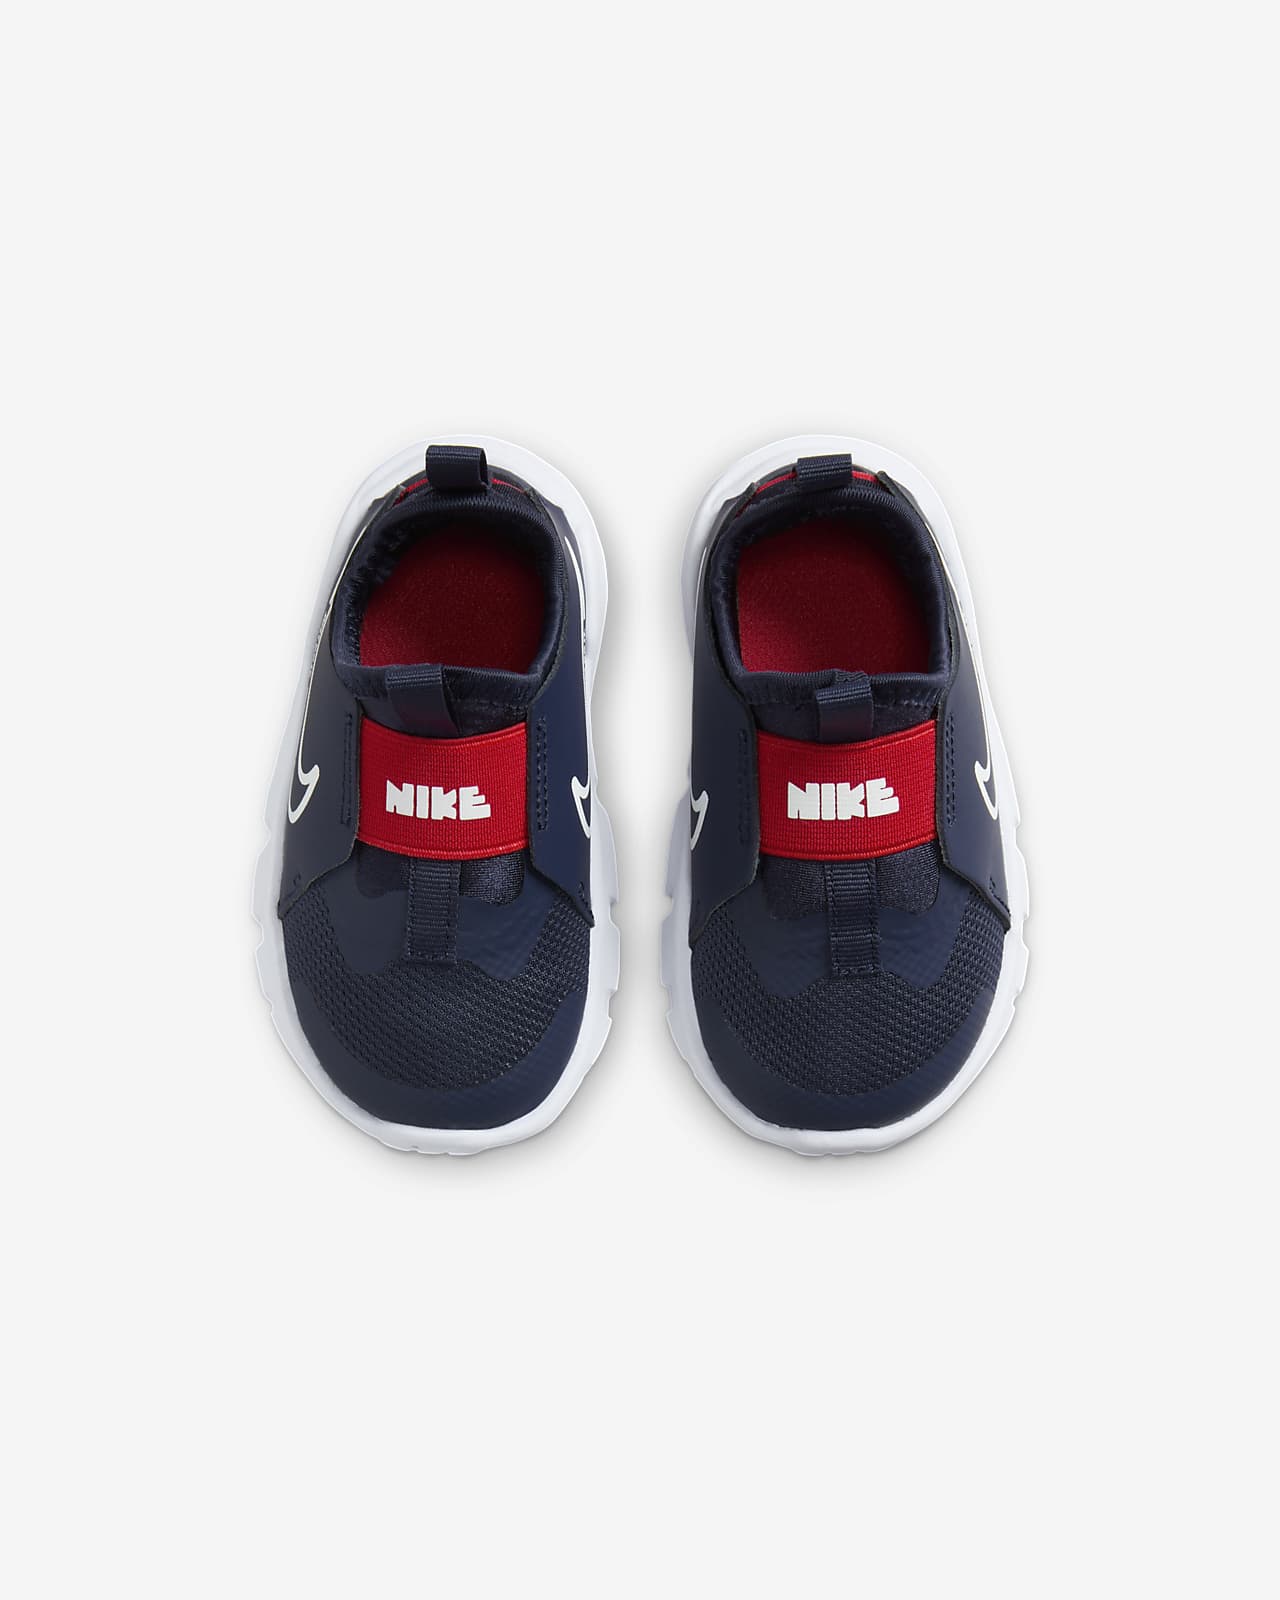 Shoes. Flex 2 Nike Runner Baby/Toddler